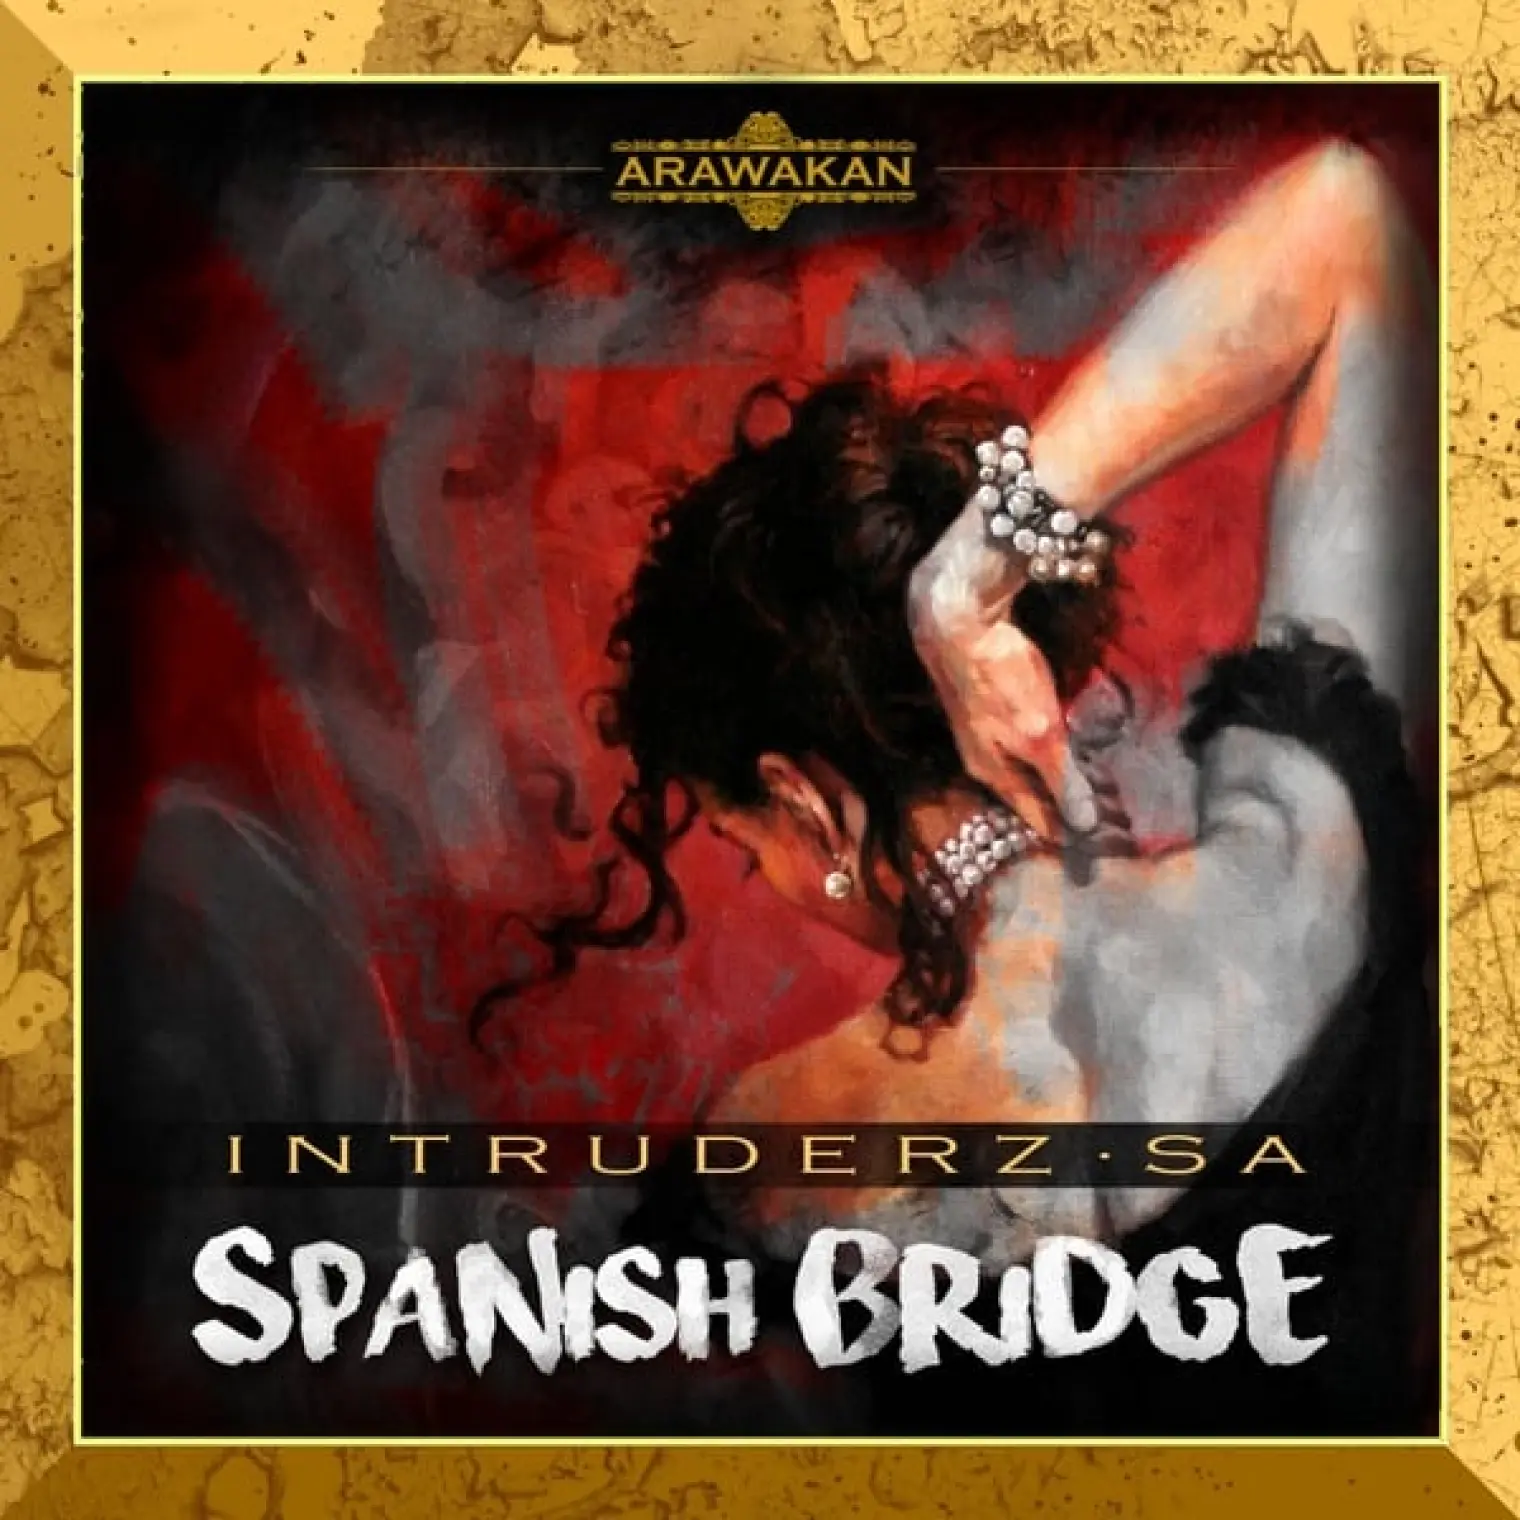 Spanish Bridge -  Intruderz SA 